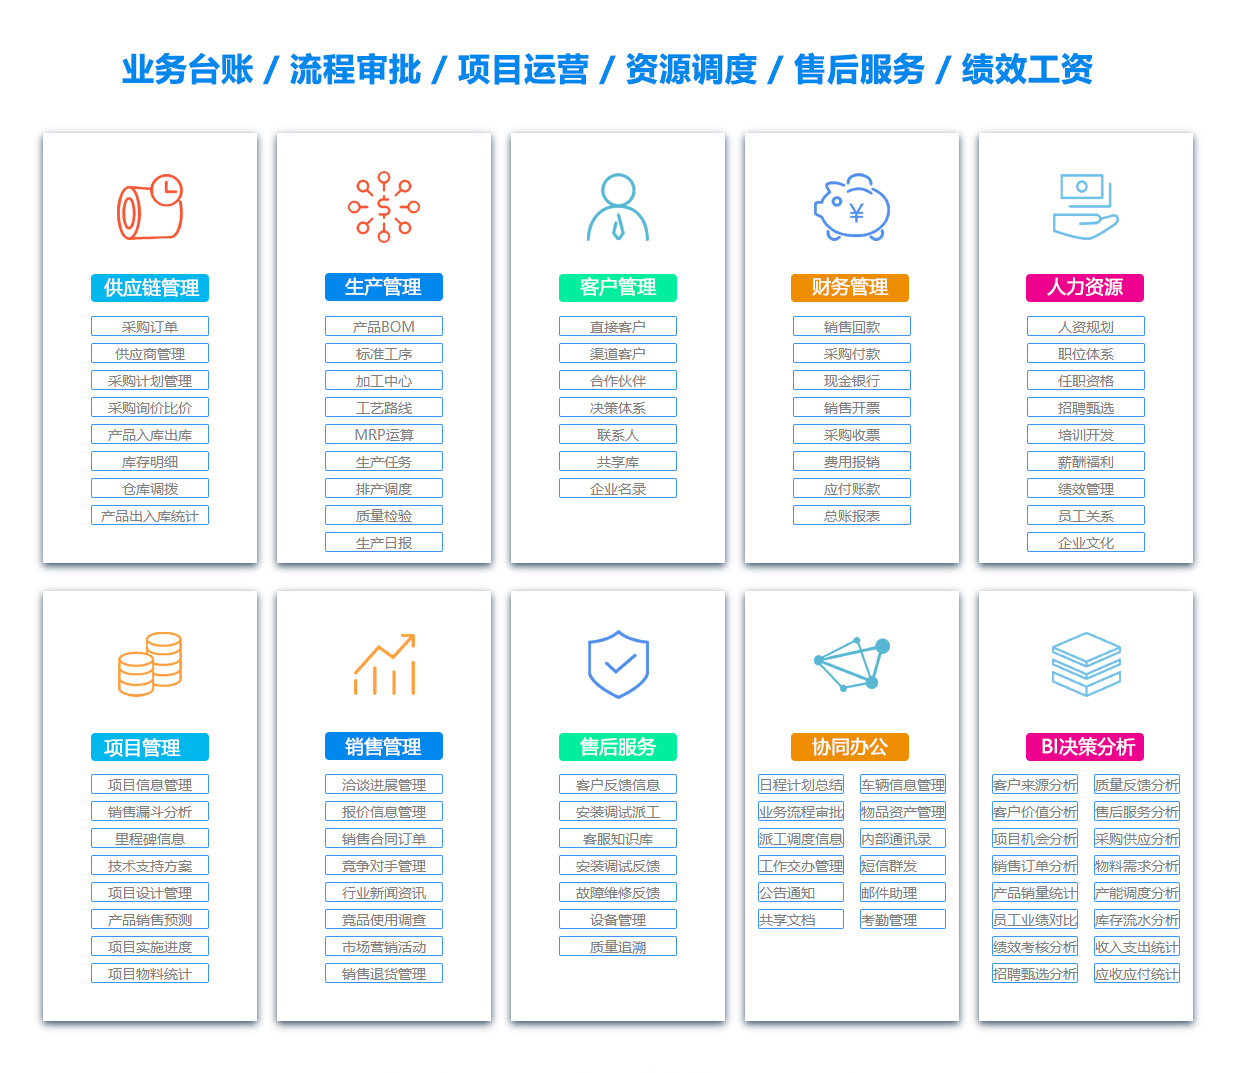 衢州SCM:供应链管理系统